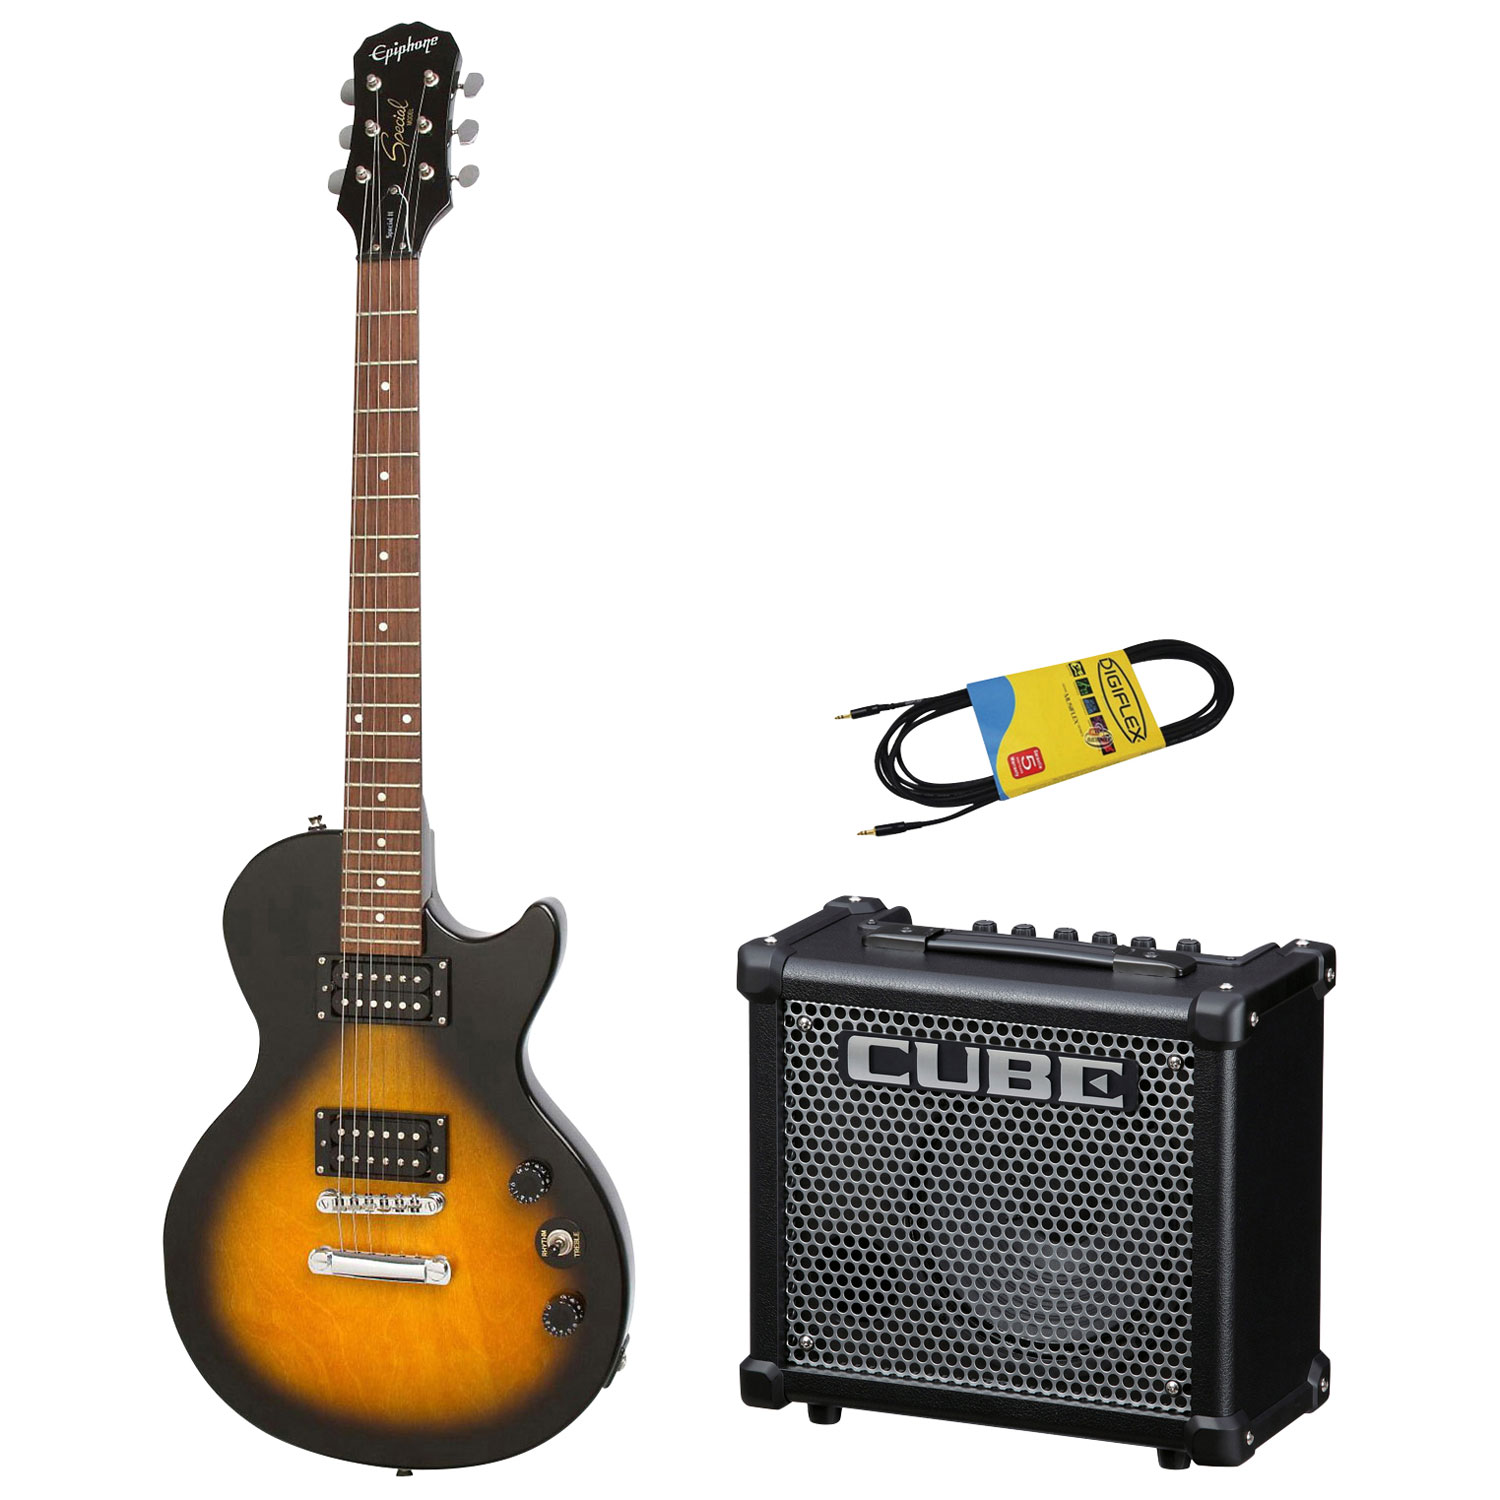 Comment choisir un amplificateur de guitare - Blogue Best Buy